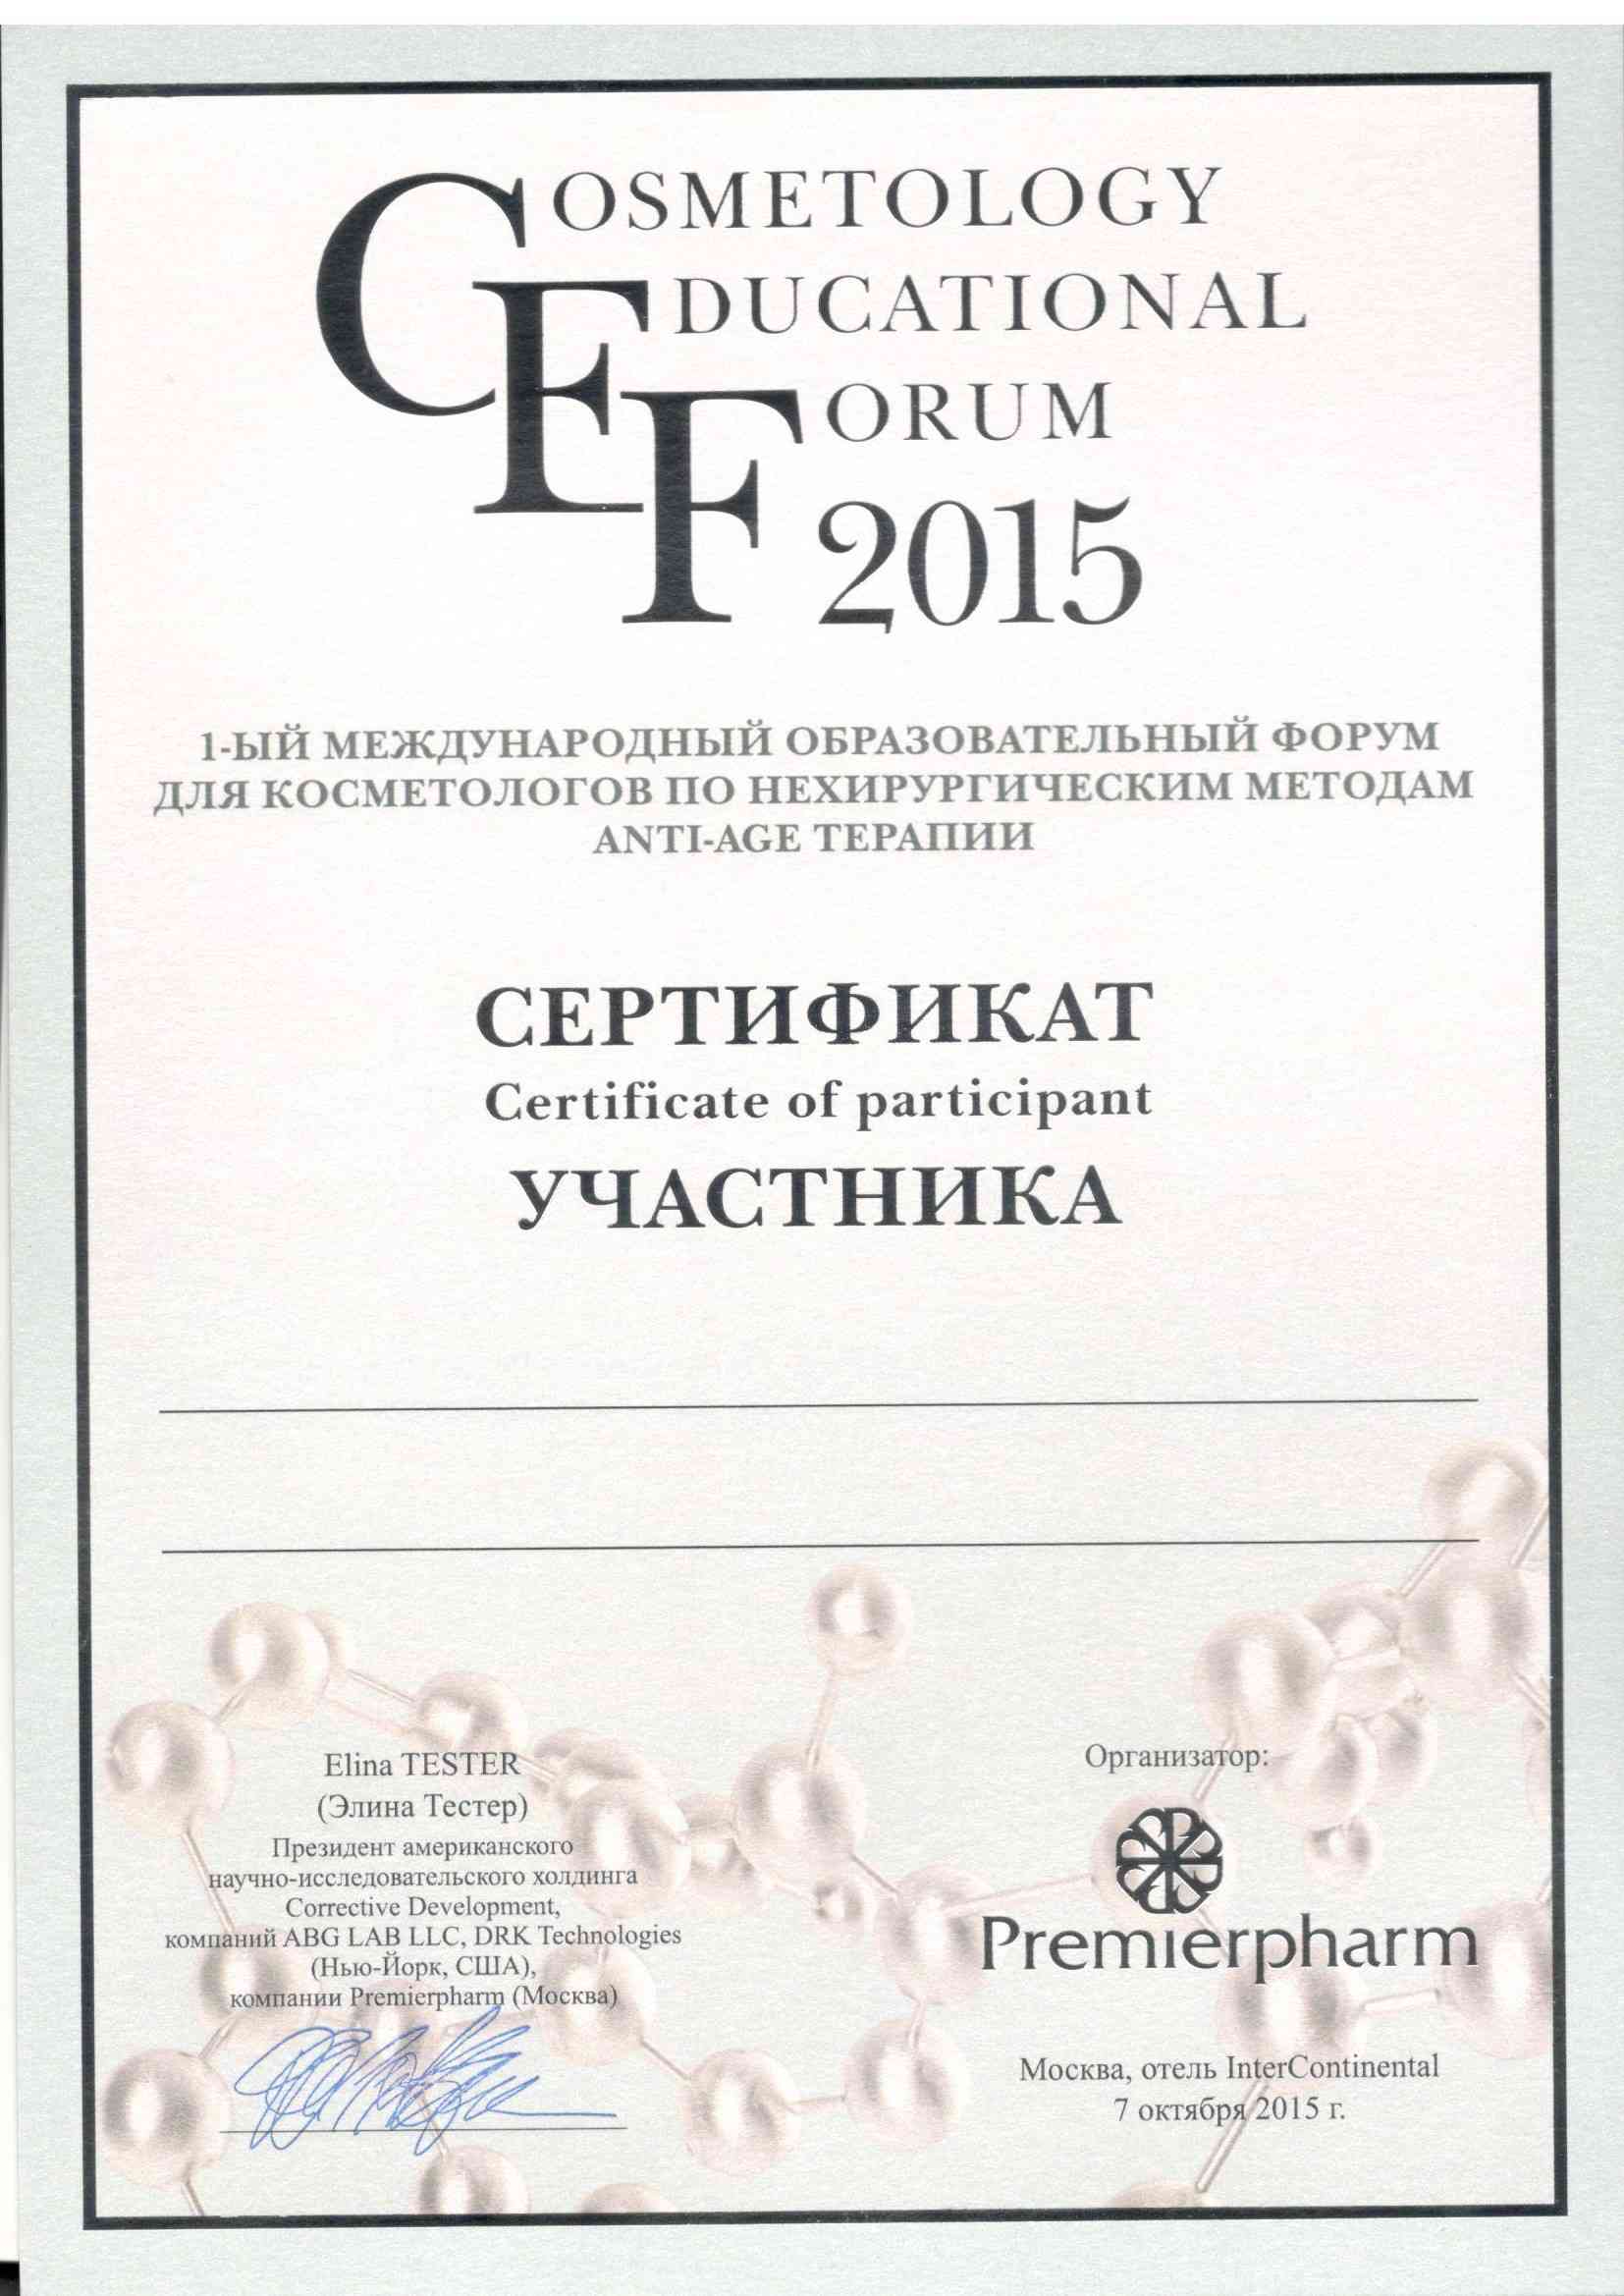 2015 forum